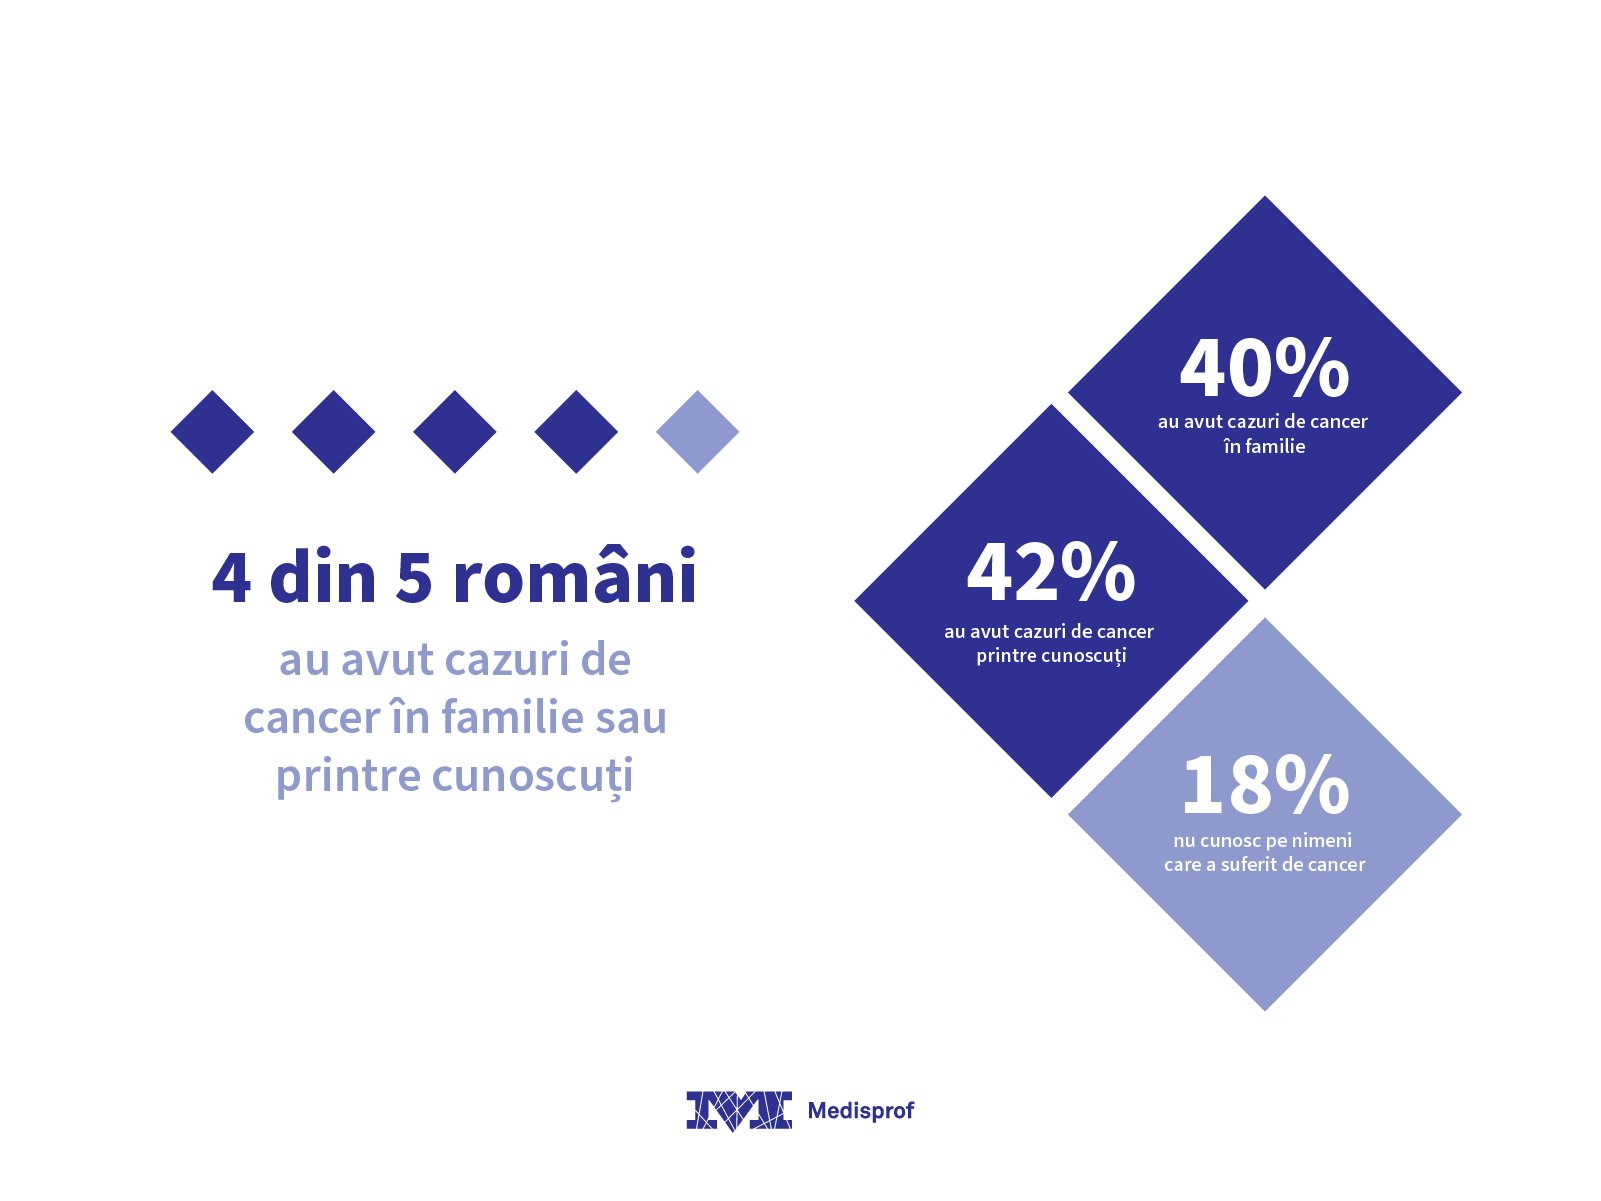 Preventie cancer - Studiu Romania Medisprof